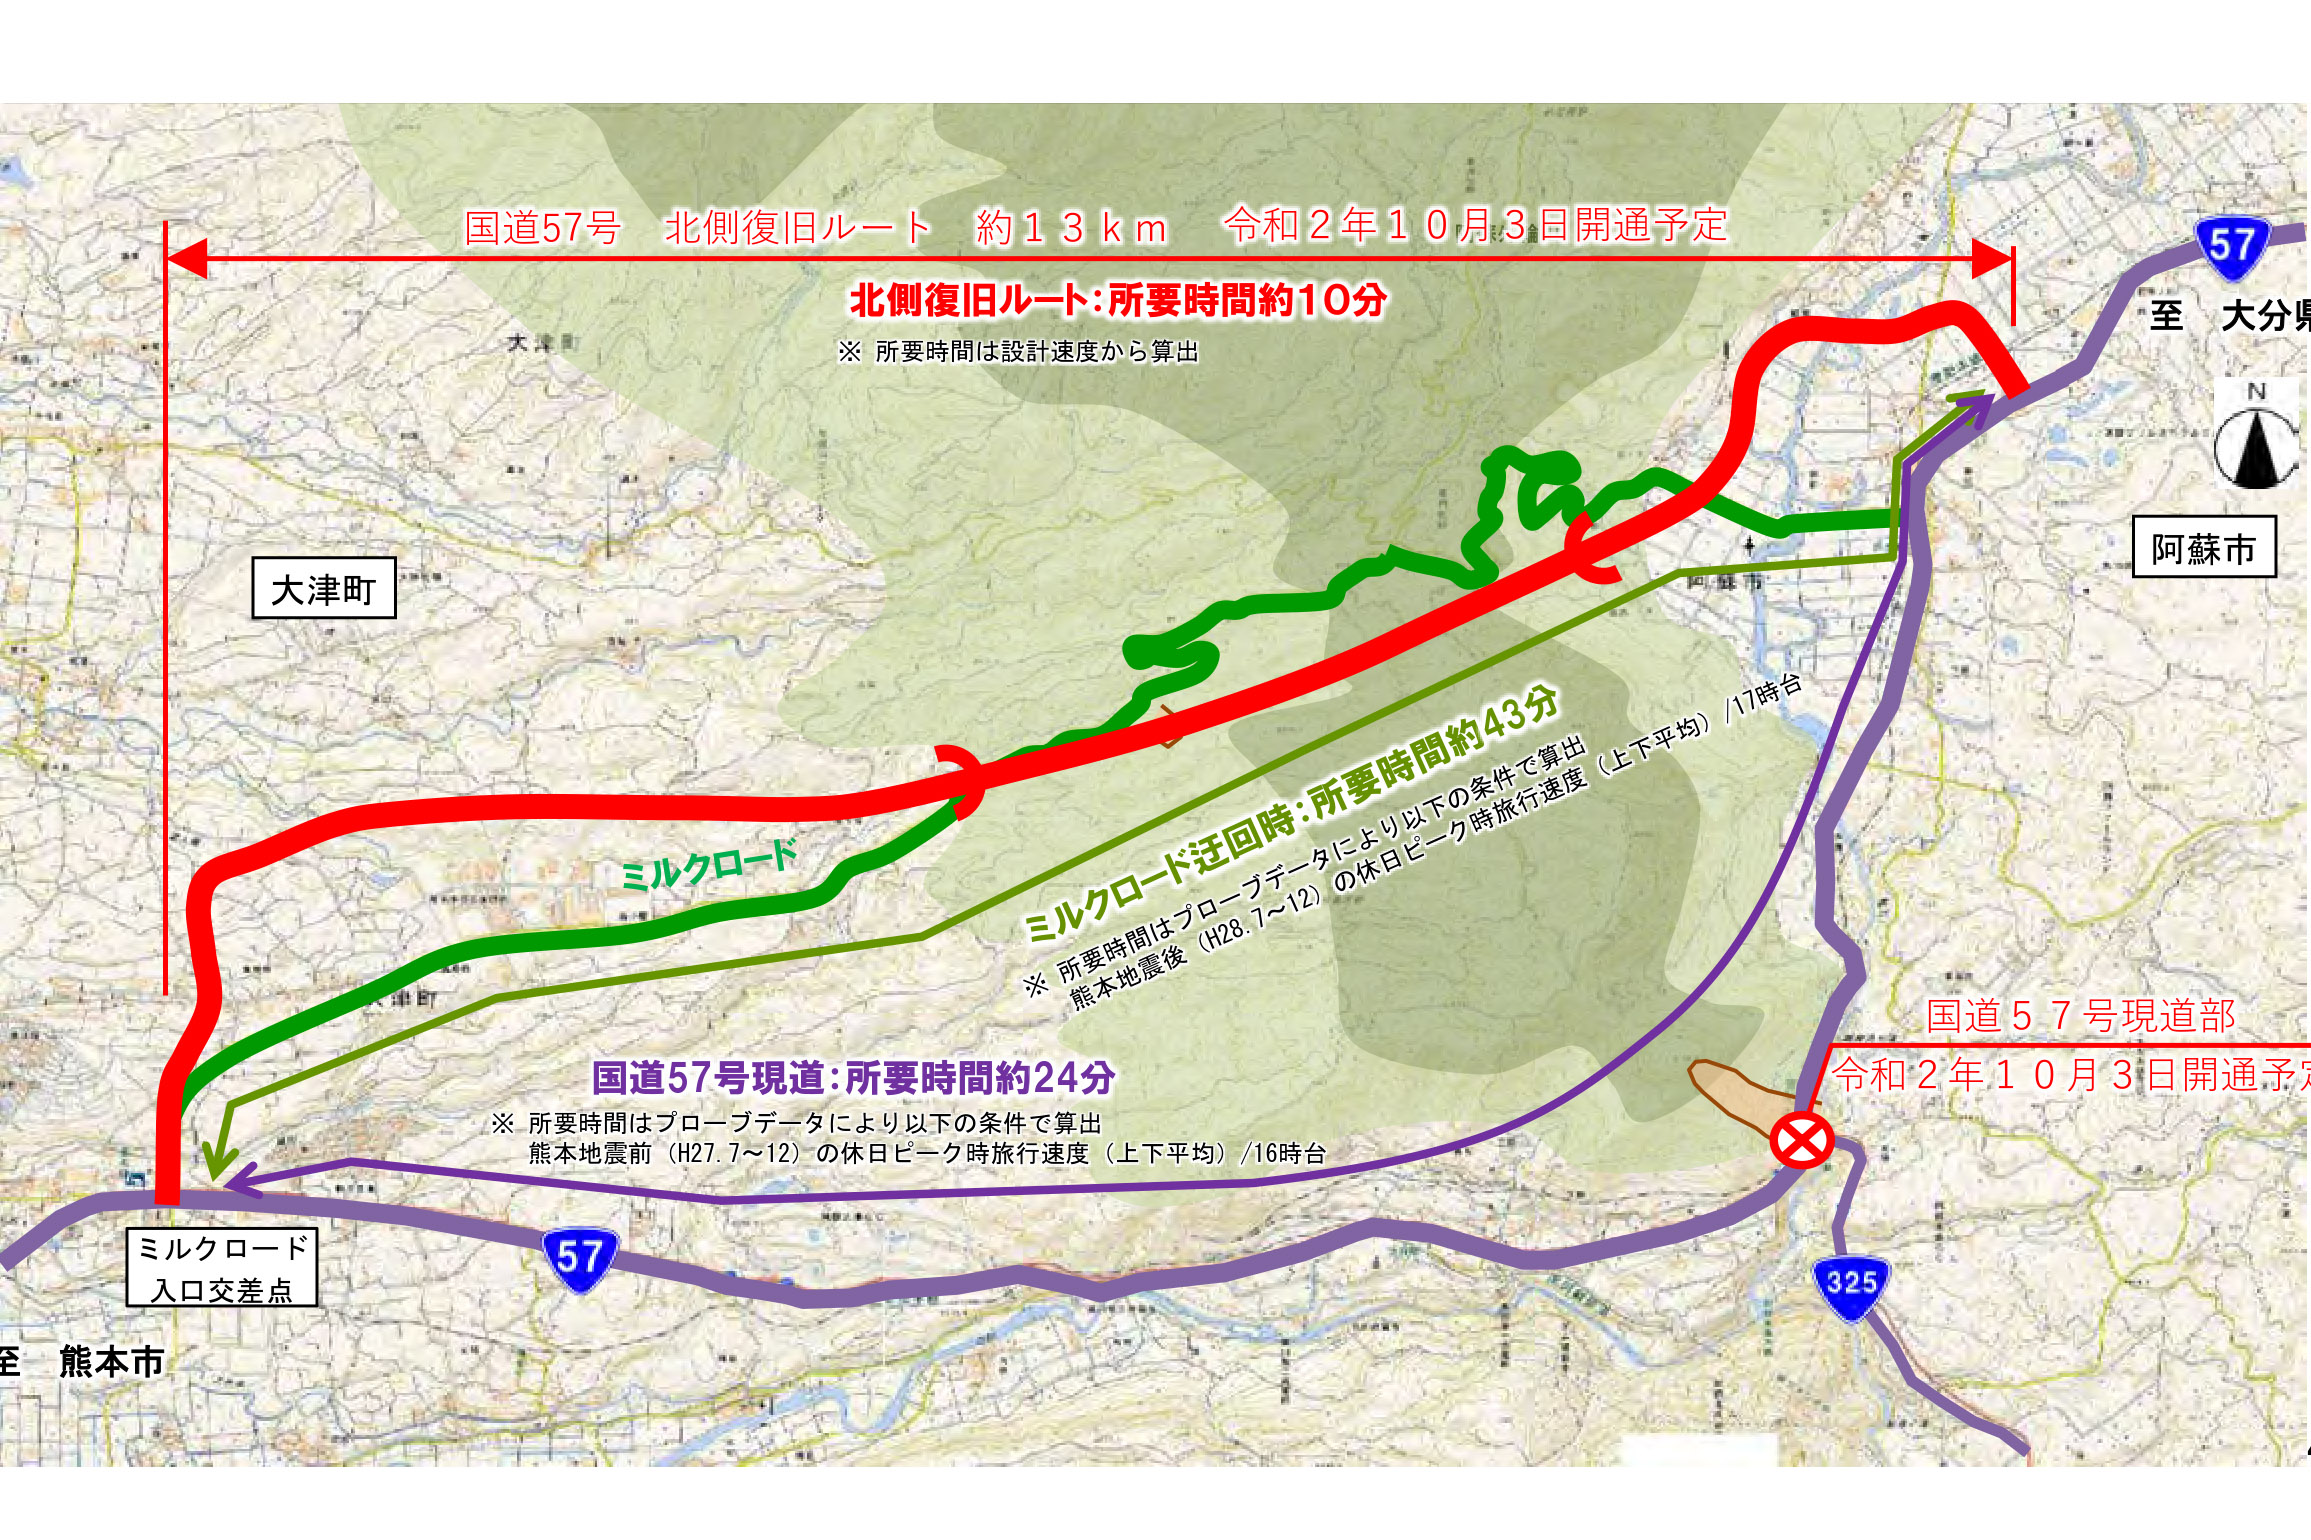 熊本地震で被災した国道57号が10月3日開通 北側復旧ルート 現道部ともに通行可能に 熊本 大分間の所要時間を30分以上短縮 トラベル Watch